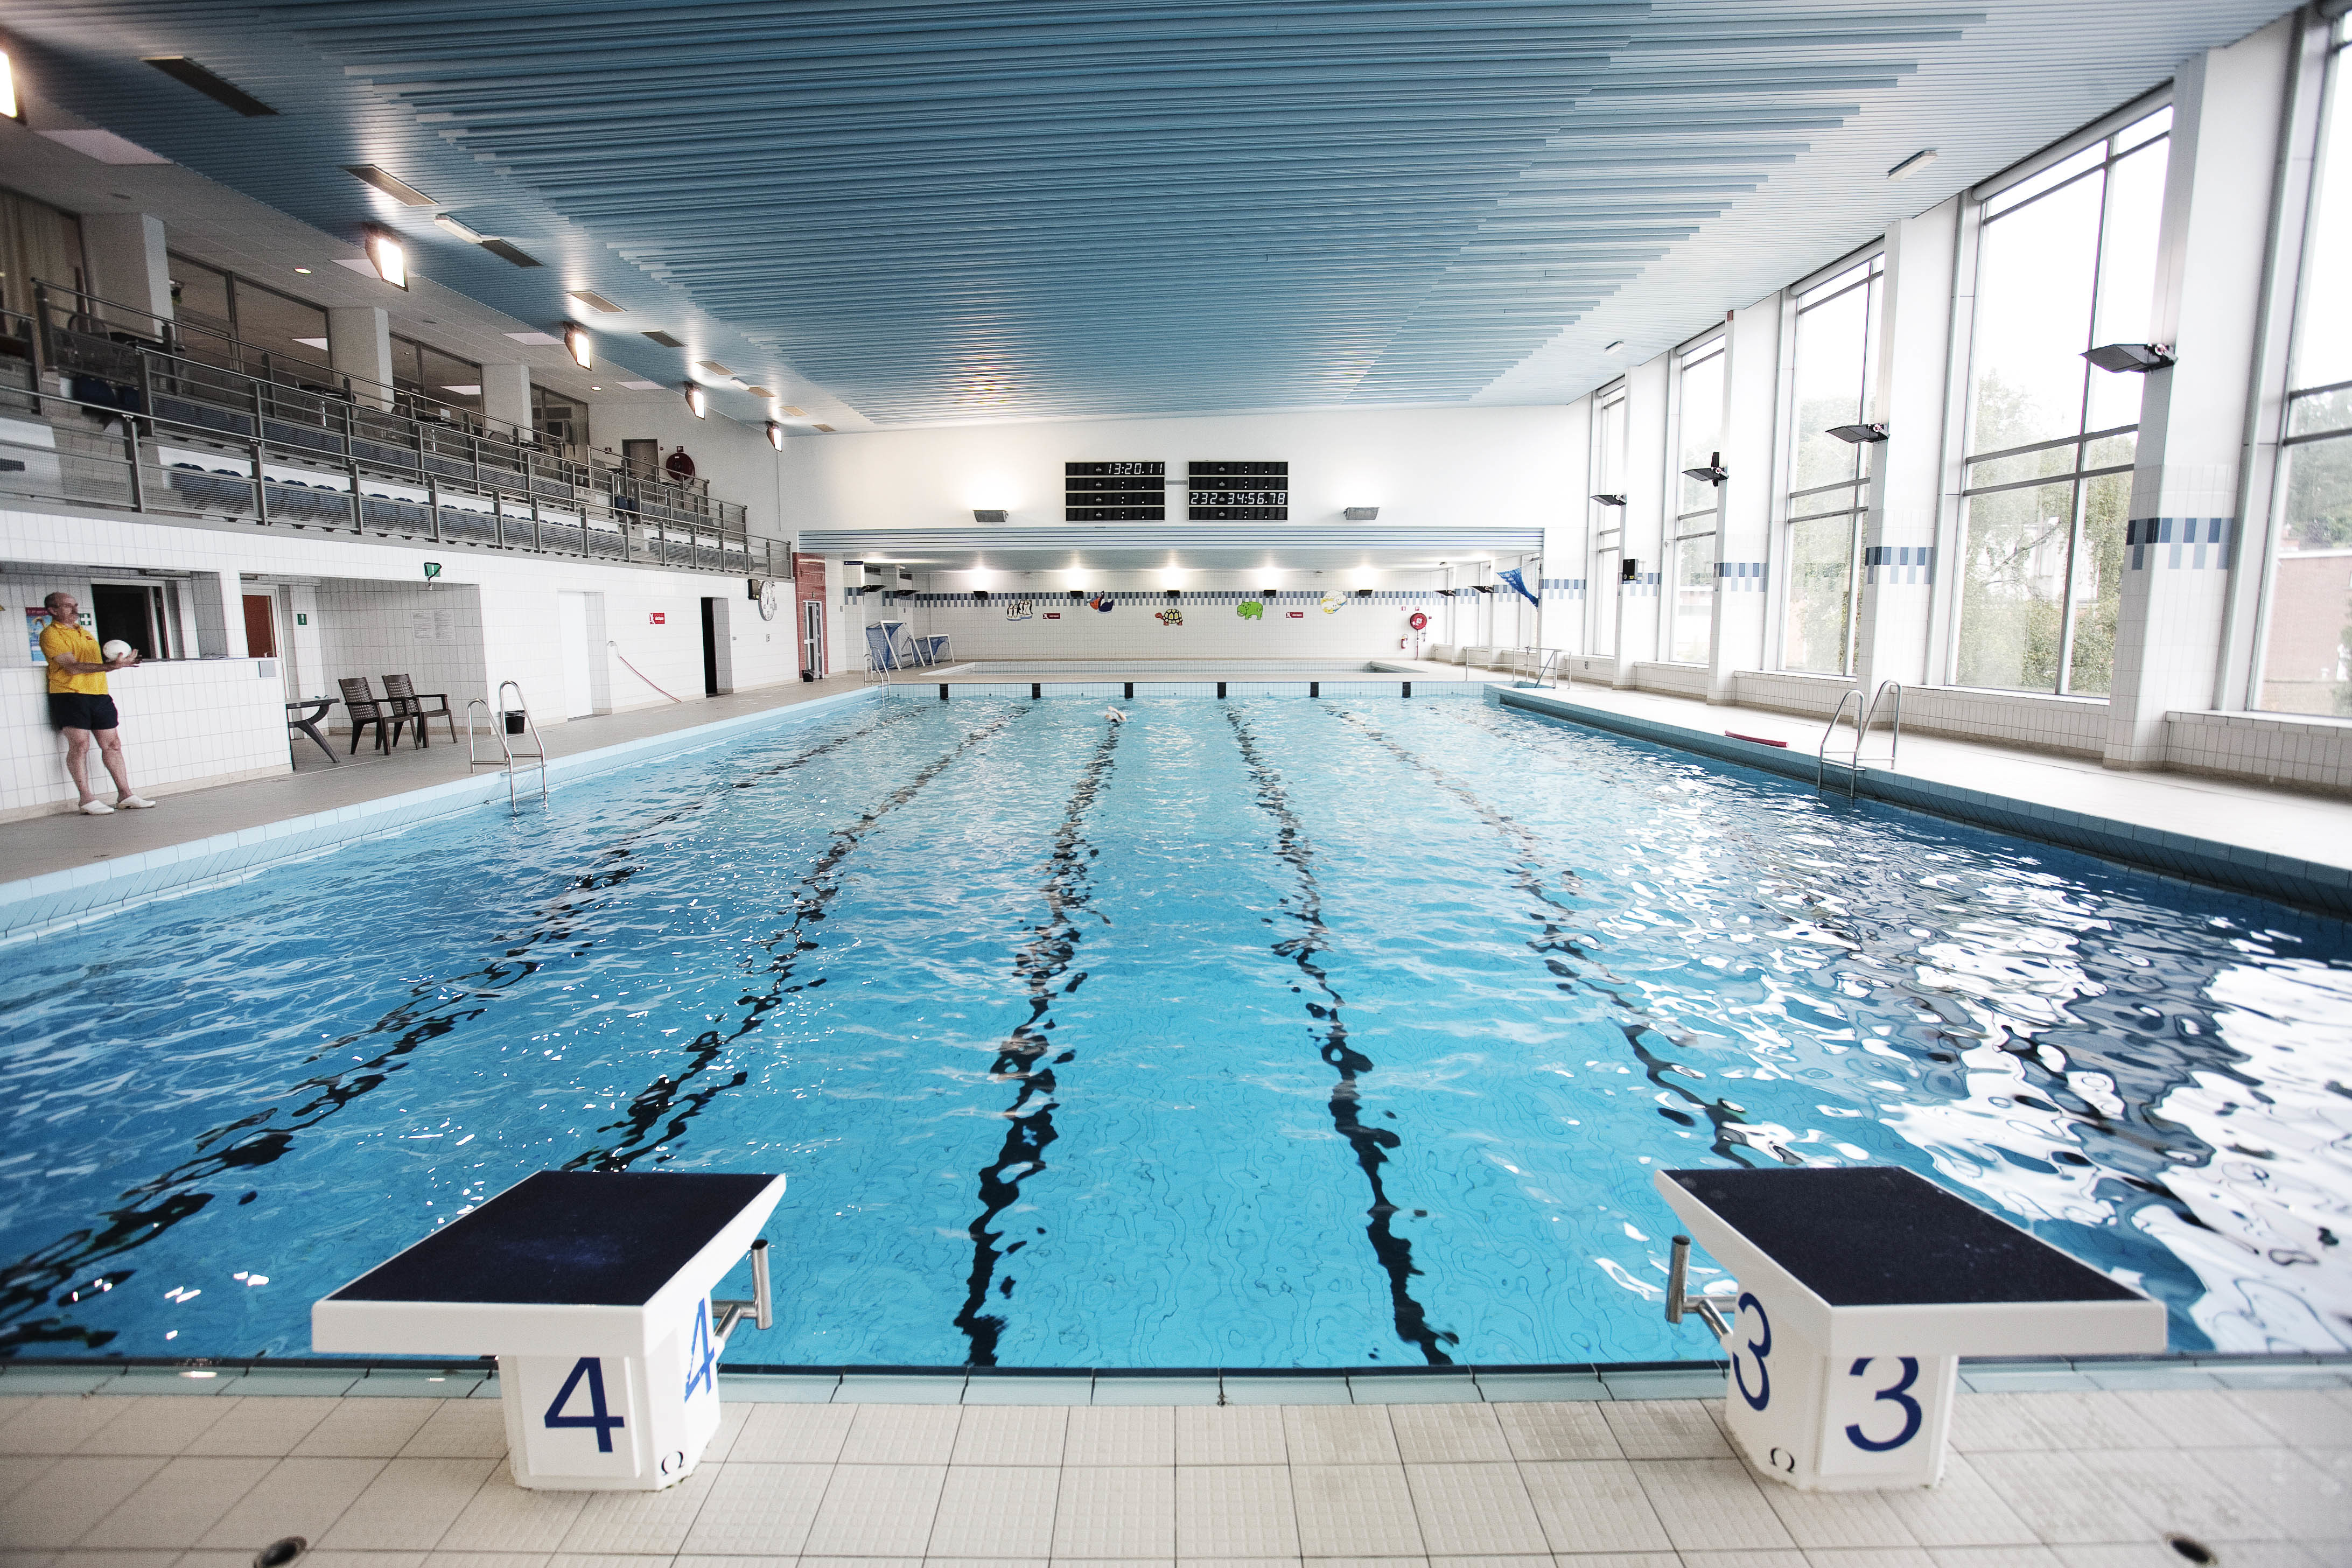 Zwembad Groenenhoek in Antwerpen.be